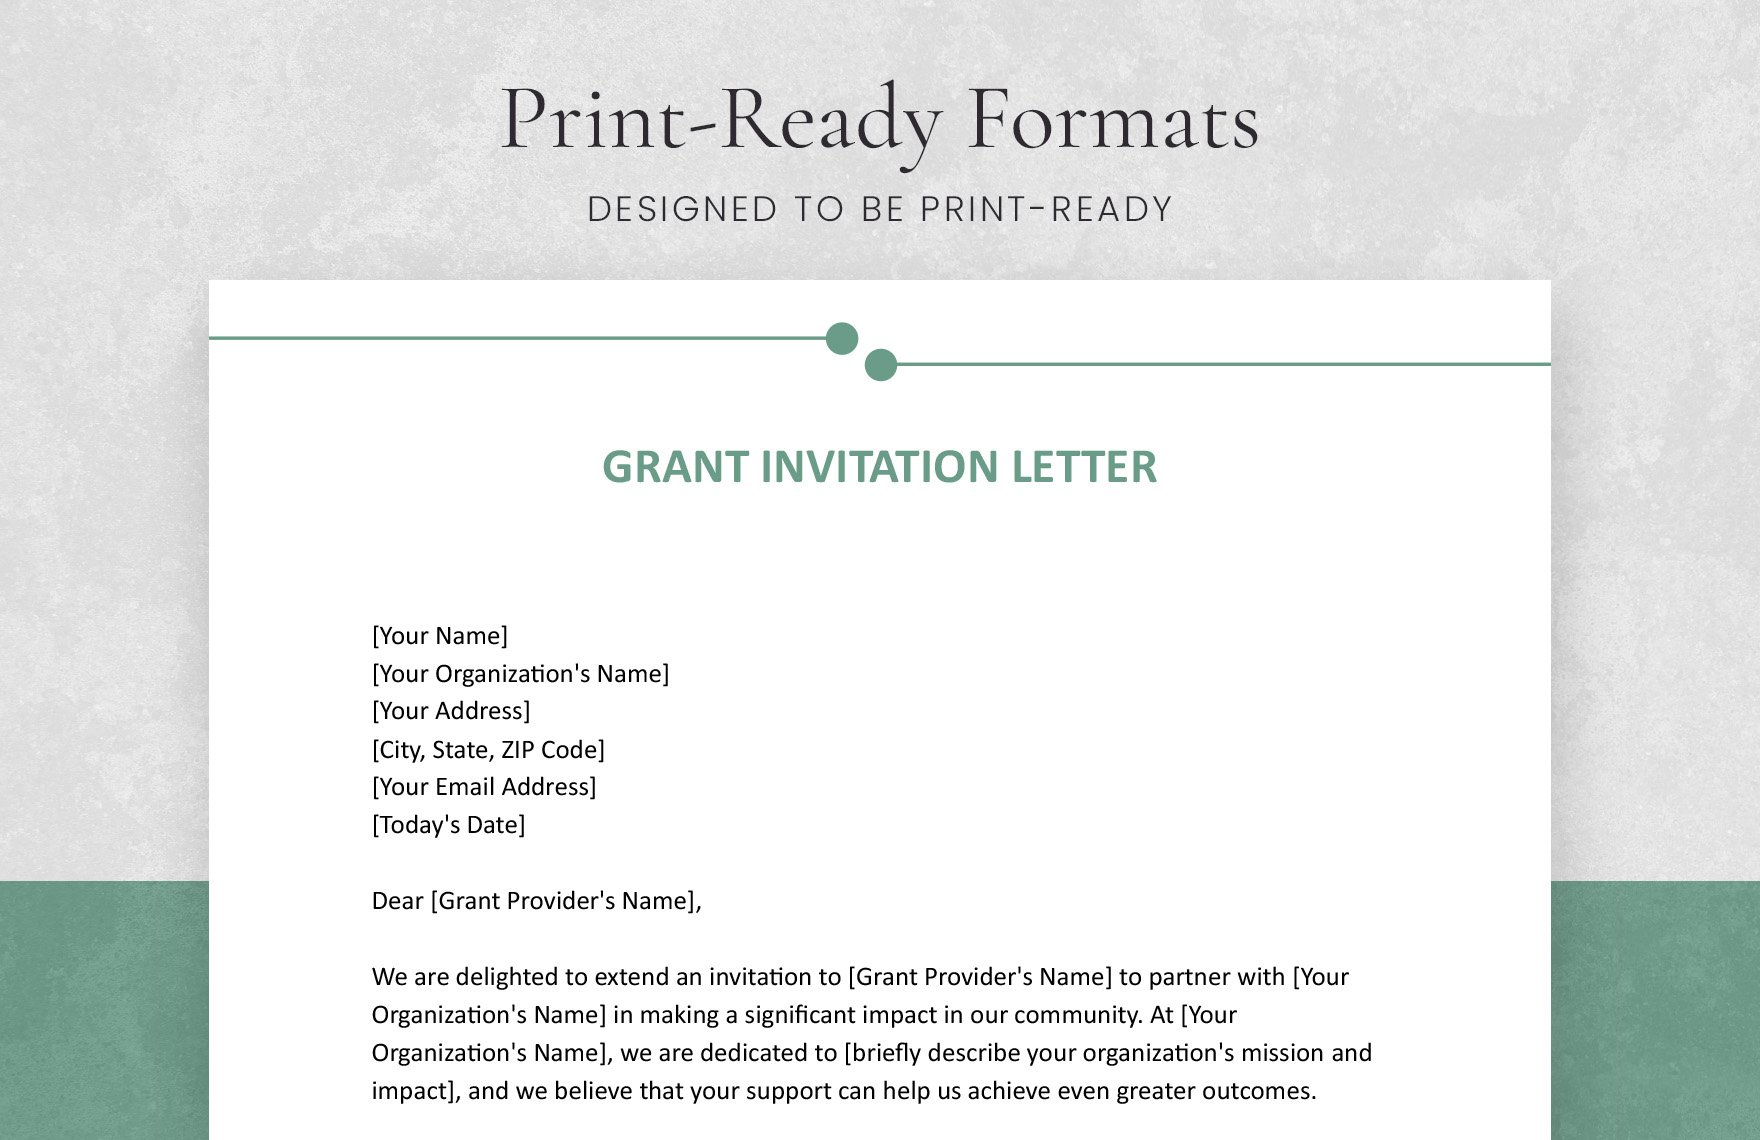 Grant Invitation Letter